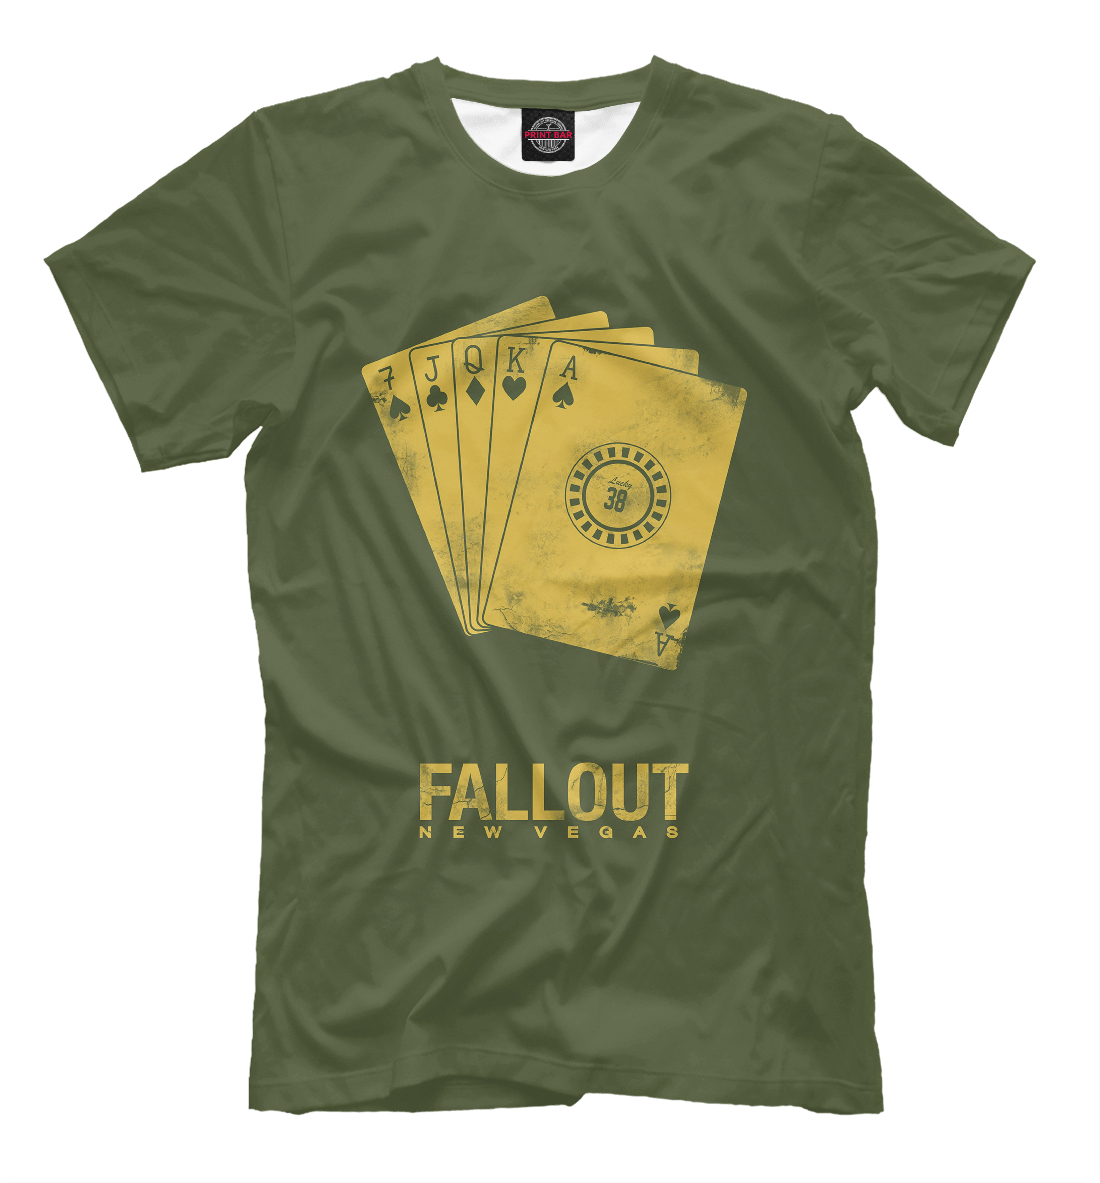 Футболка Fallout New Vegas для мужчин, артикул: FOT-162114-fut-2mp